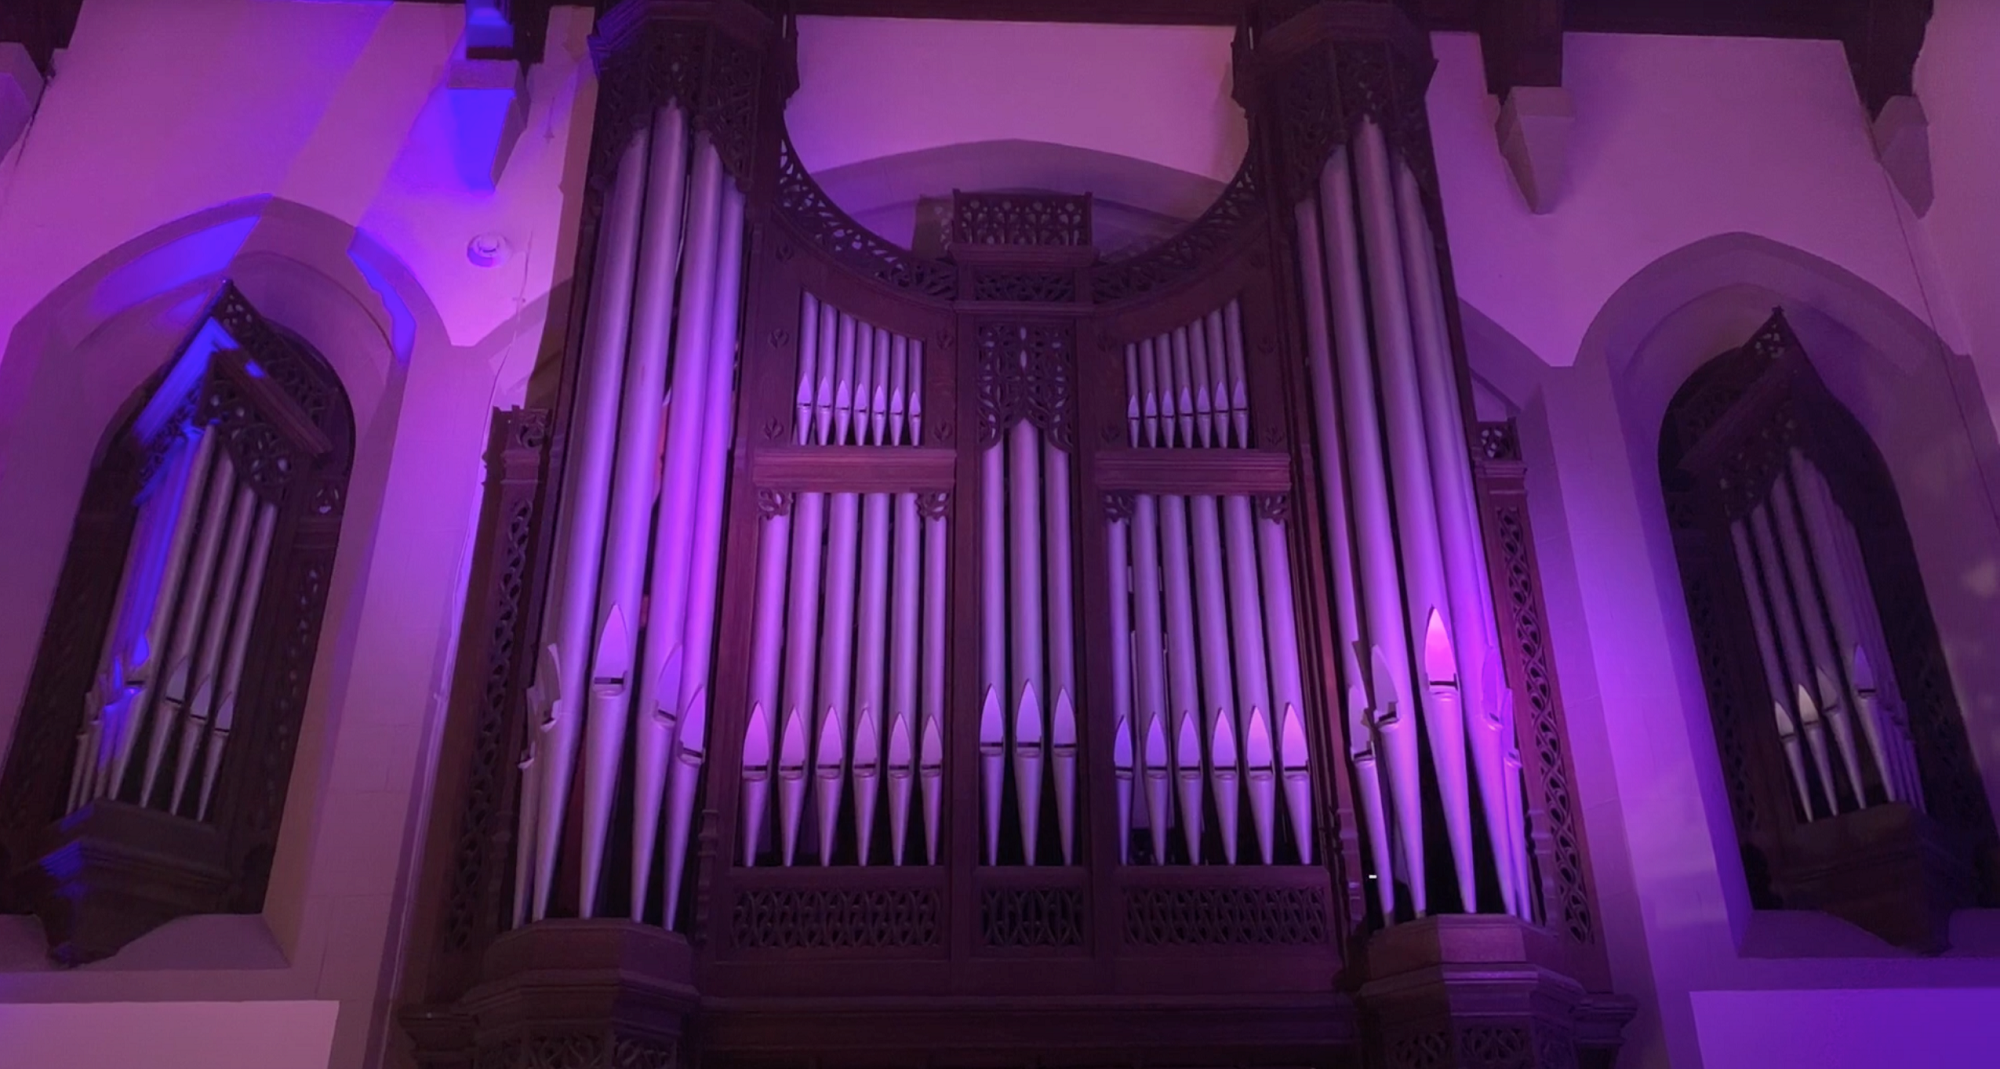 Memorial Organ pipes